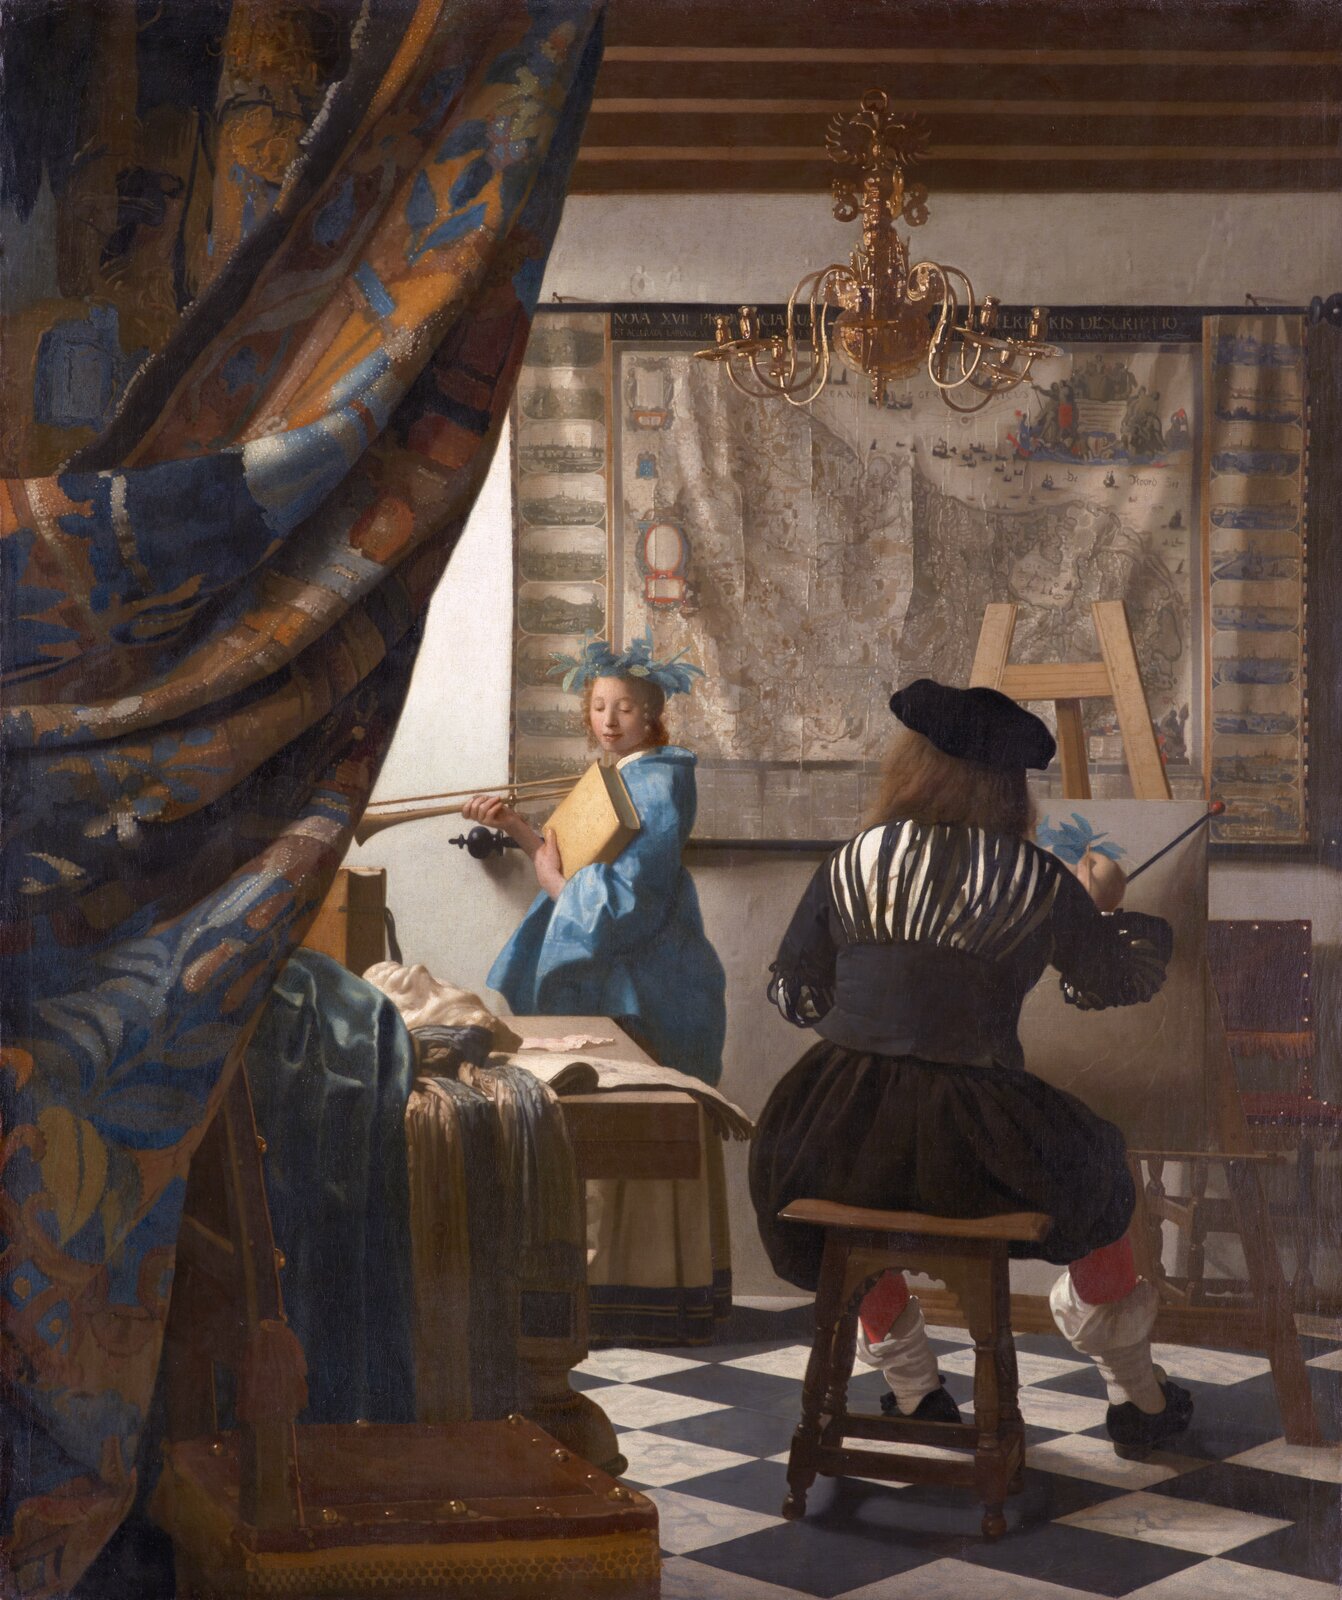 Ilustracja o kształcie pionowego prostokąta przedstawia obraz autorstwa Jana Vermeera van Delft „Alegoria malarstwa”. Obraz przedstawia artystę siedzącego przed sztalugą, tyłem do widza. Artysta maluje modelkę. Dziewczyna ubrana jest w niebieską suknię z żółtą spódnicą. Jej głowa jest zwrócona w stronę malarza. Sufit wykonany jest z drewnianych belek w brązowym kolorze, na których wisi bogato zdobiony żyrandol.  Po lewej stronie obrazu widoczna jest barwna kotara. 